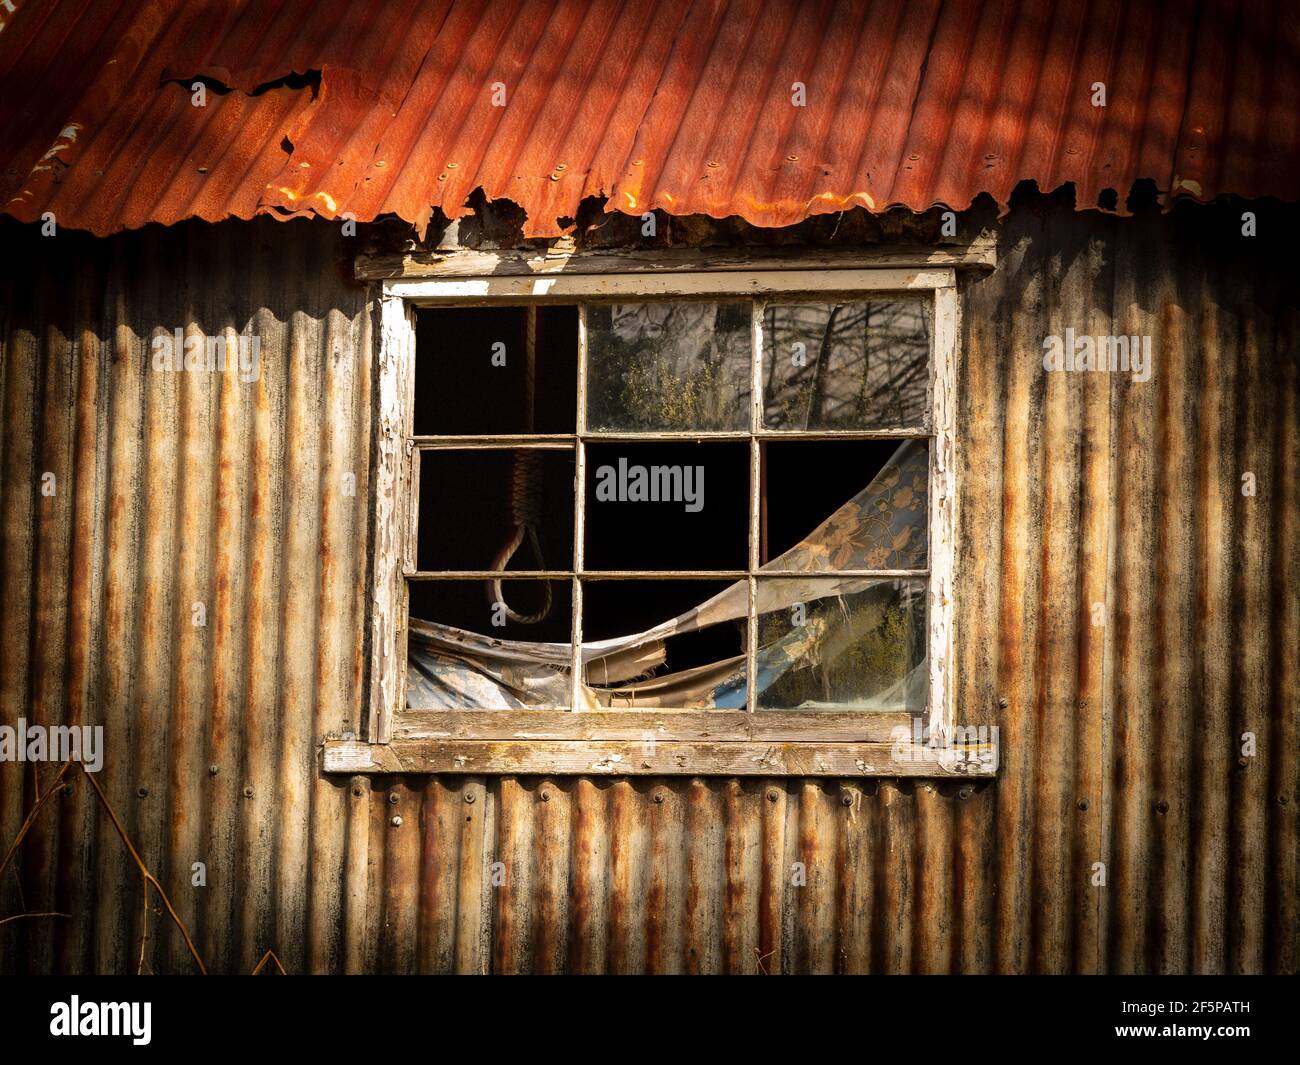 Ein baufälliger Wellblech-Großschuppen, mit kaputten Fensterscheiben und einer hängenden Schlinge im düsteren Innenraum Stockfoto